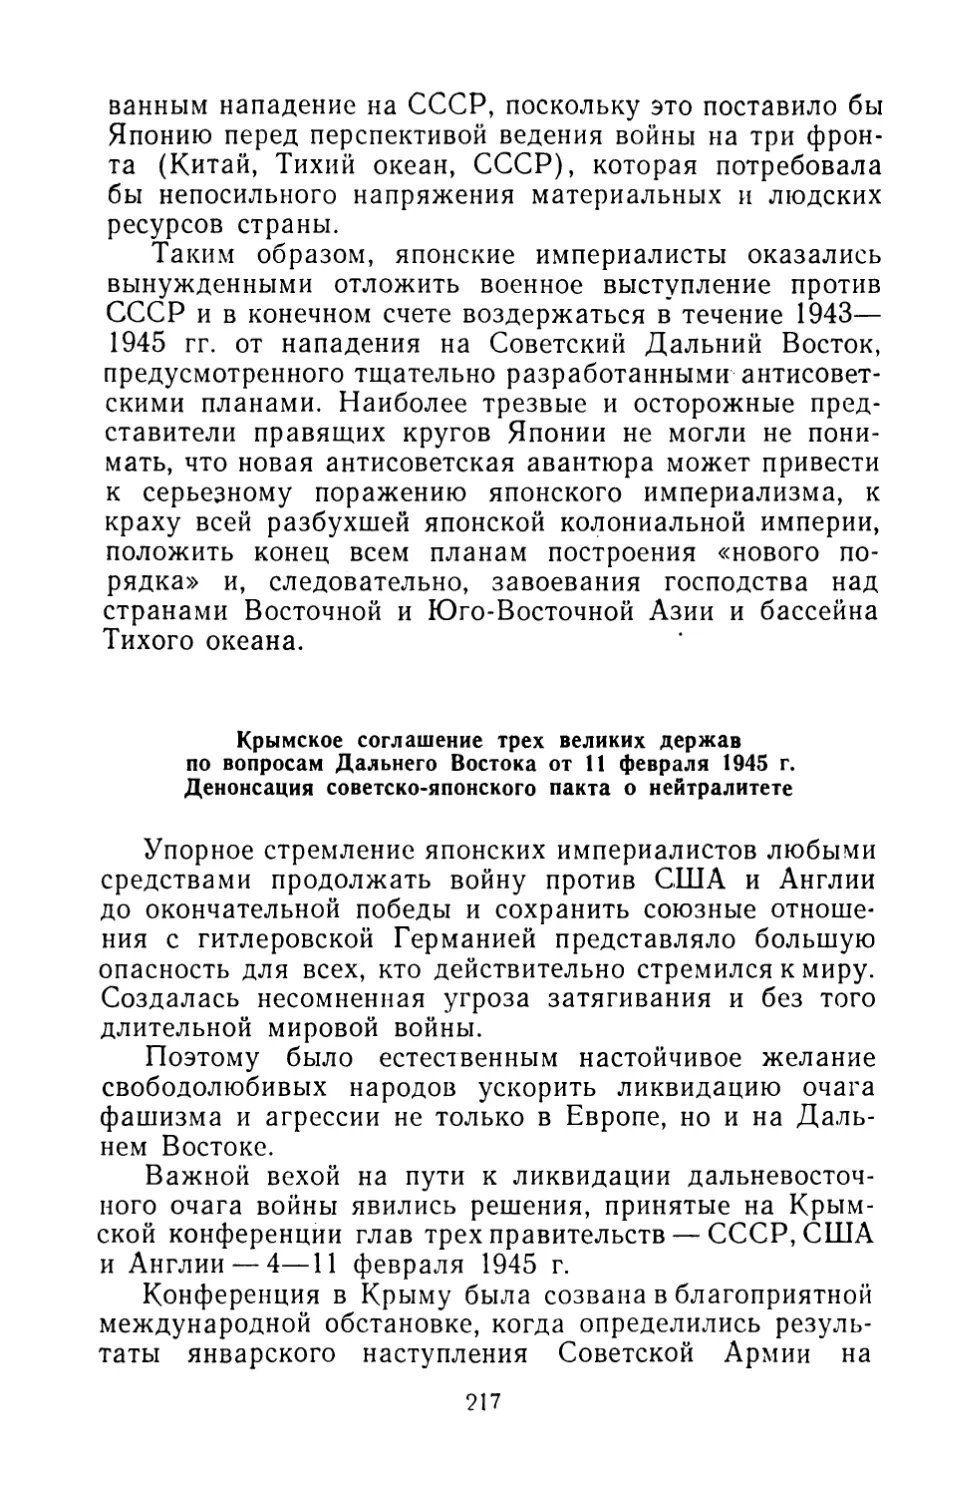 Крымское соглашение трех великих держав по вопросам Дальнего Востока от 11 февраля 1945 г. Денонсация советско-японского пакта о нейтралитете